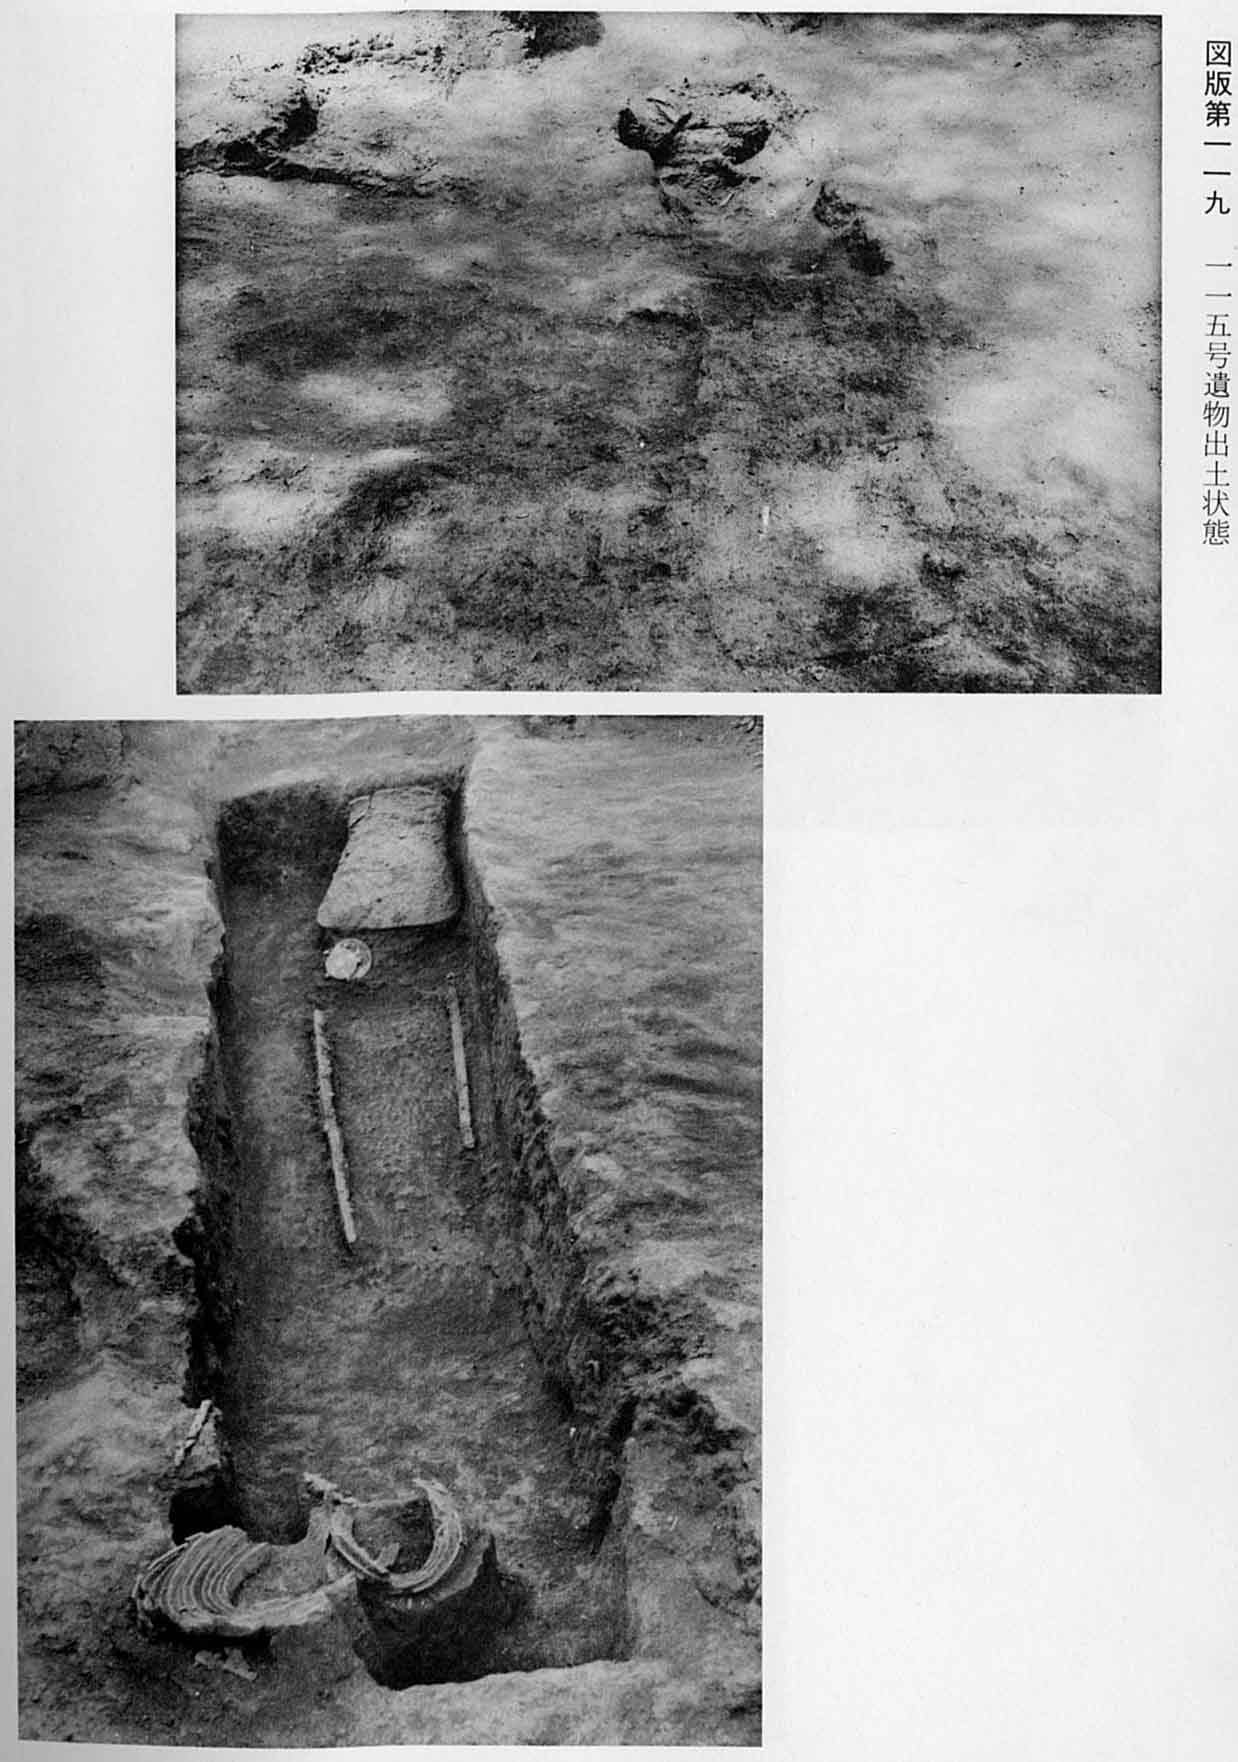 短い甲羅が出土した状態と、土器や棒が出土した状態を捉えた、図版119 115号遺物出土状態のモノクロ写真